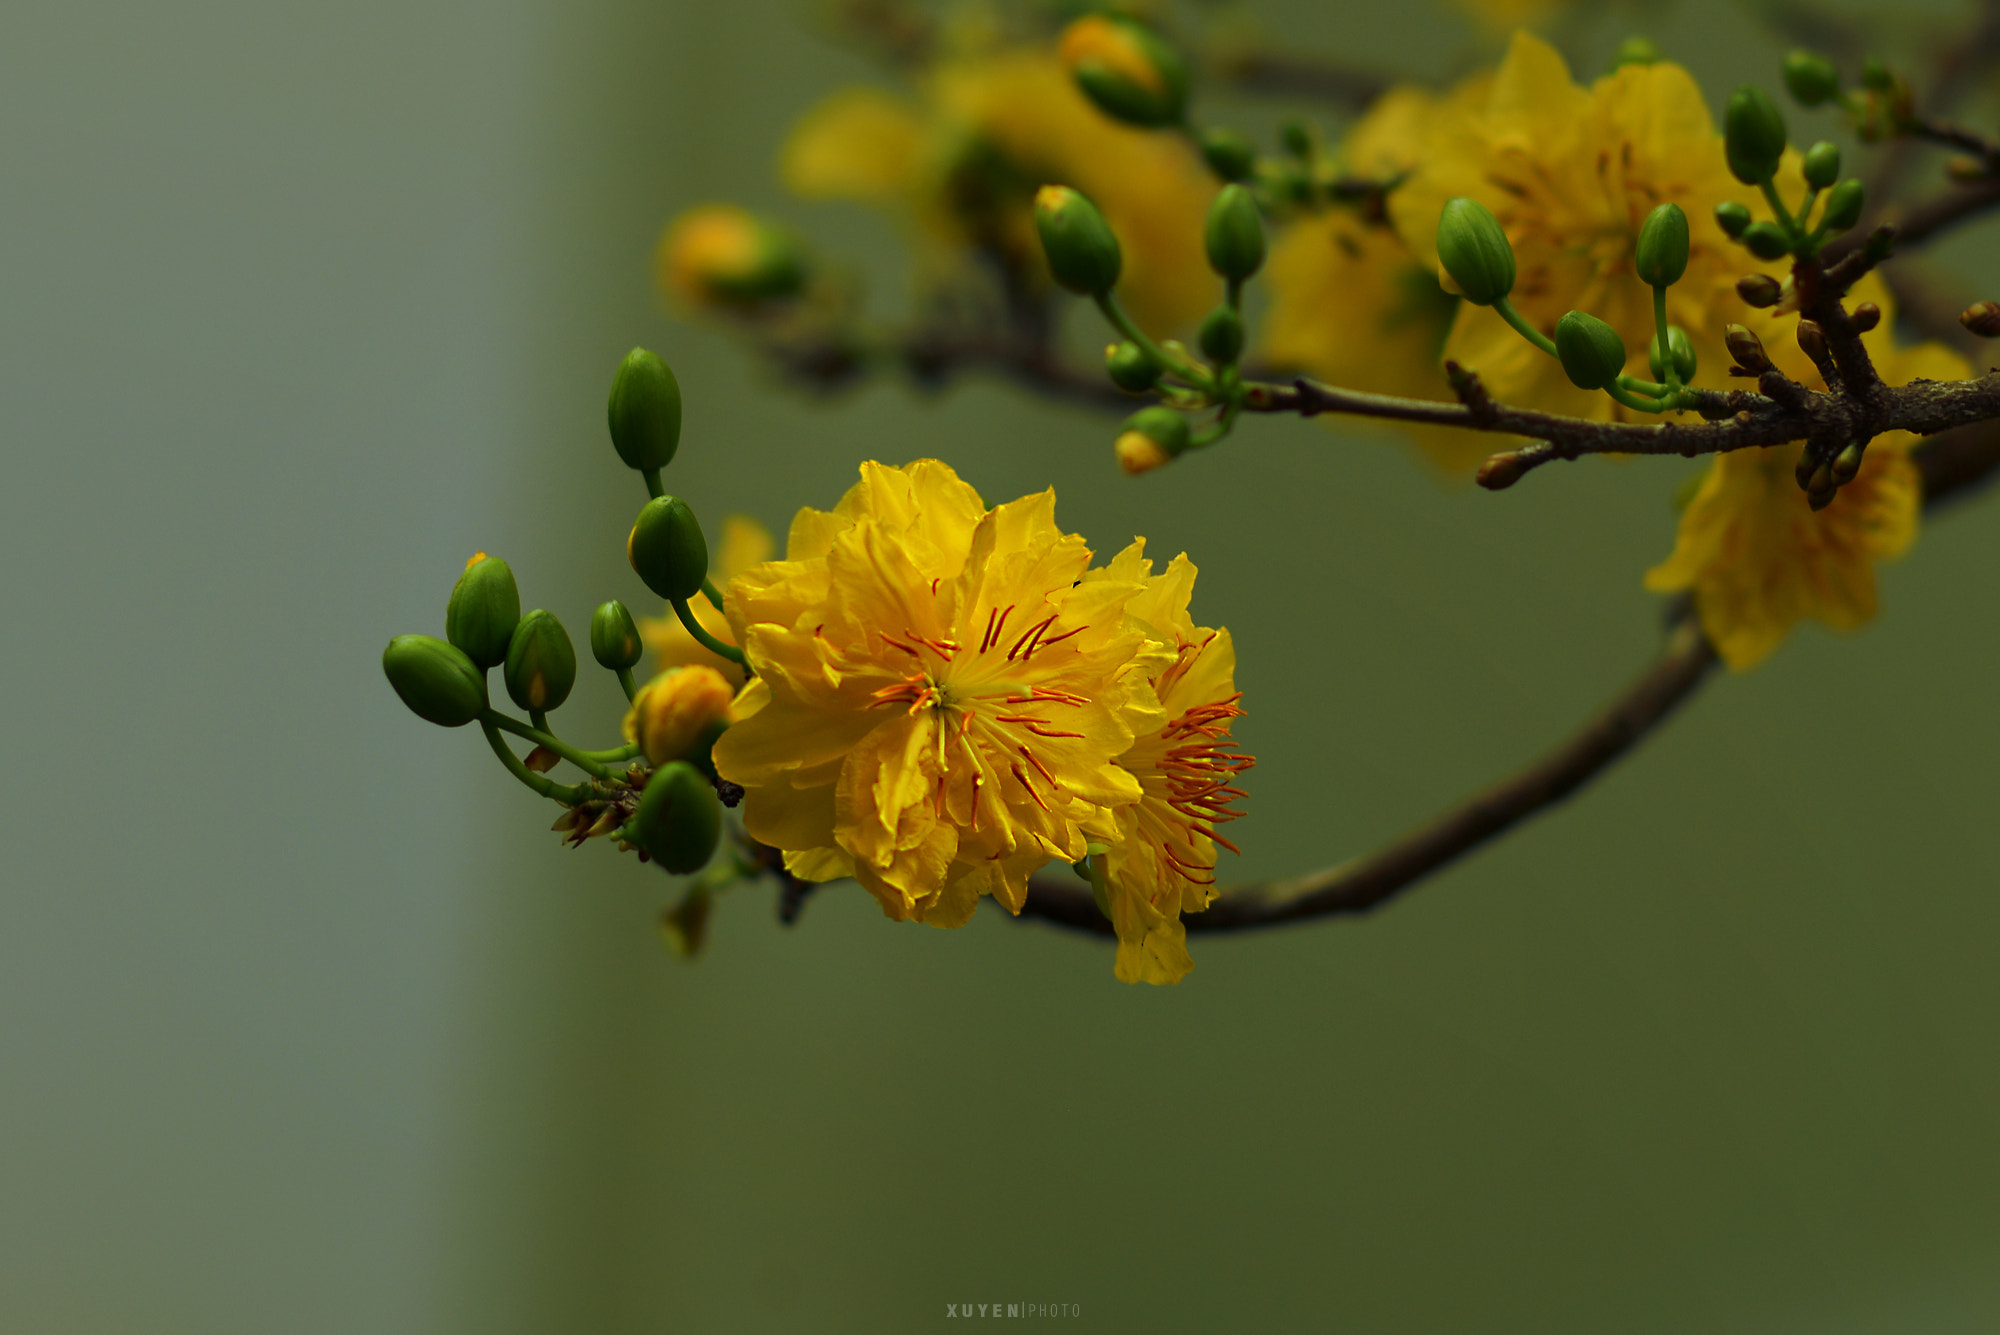 Nikon D600 + AF-S DX Zoom-Nikkor 18-55mm f/3.5-5.6G ED sample photo. Spring flower photography